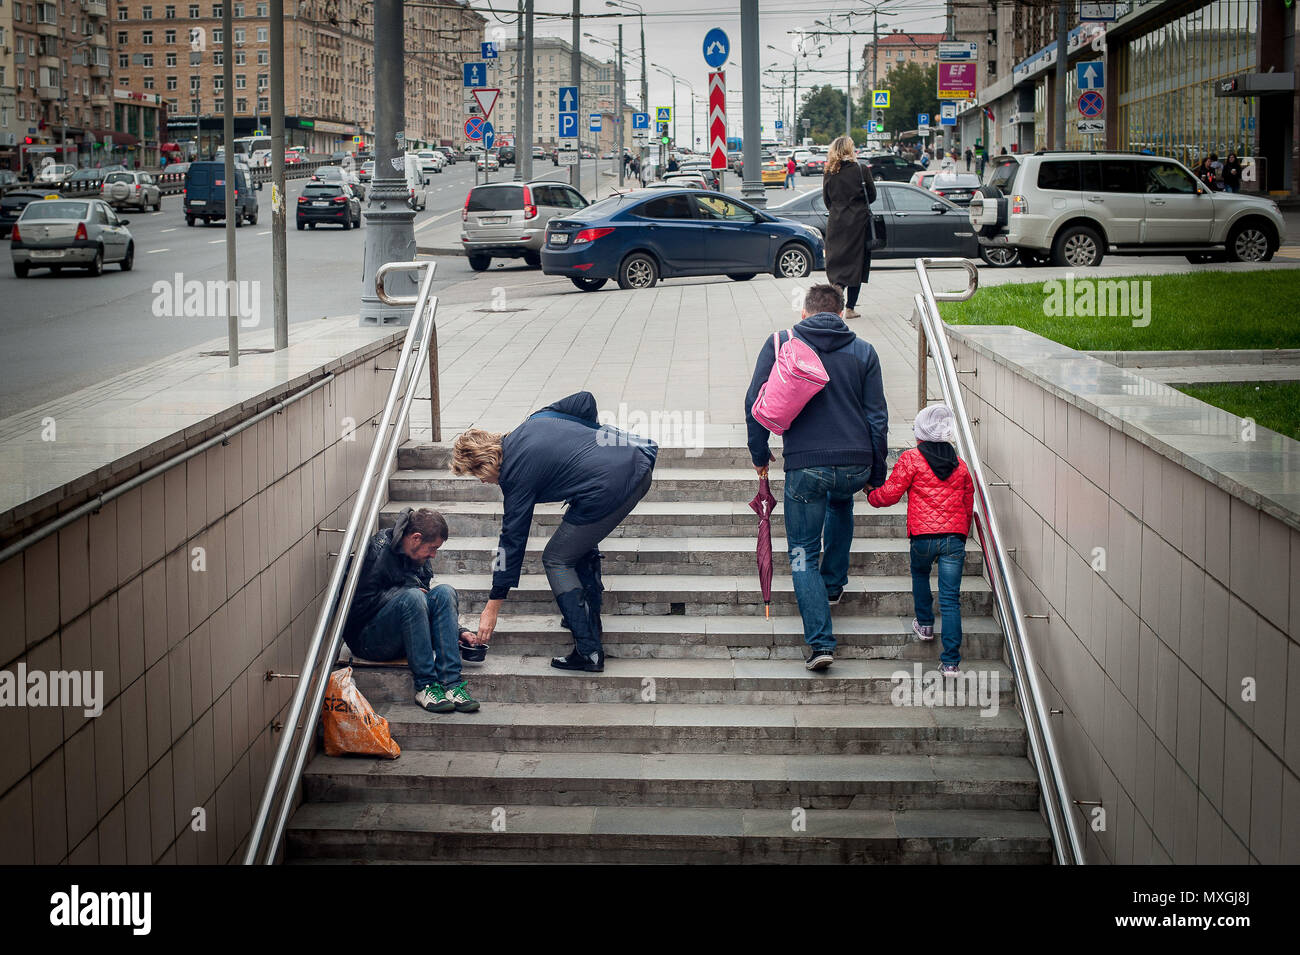 Moscou, Moskau, Russland. 4. Juni 2018. Straße Bettler im Betteln auf den Stufen der Unterführung Credit: Aleksei Sukhorukov/ZUMA Draht/Alamy leben Nachrichten Stockfoto